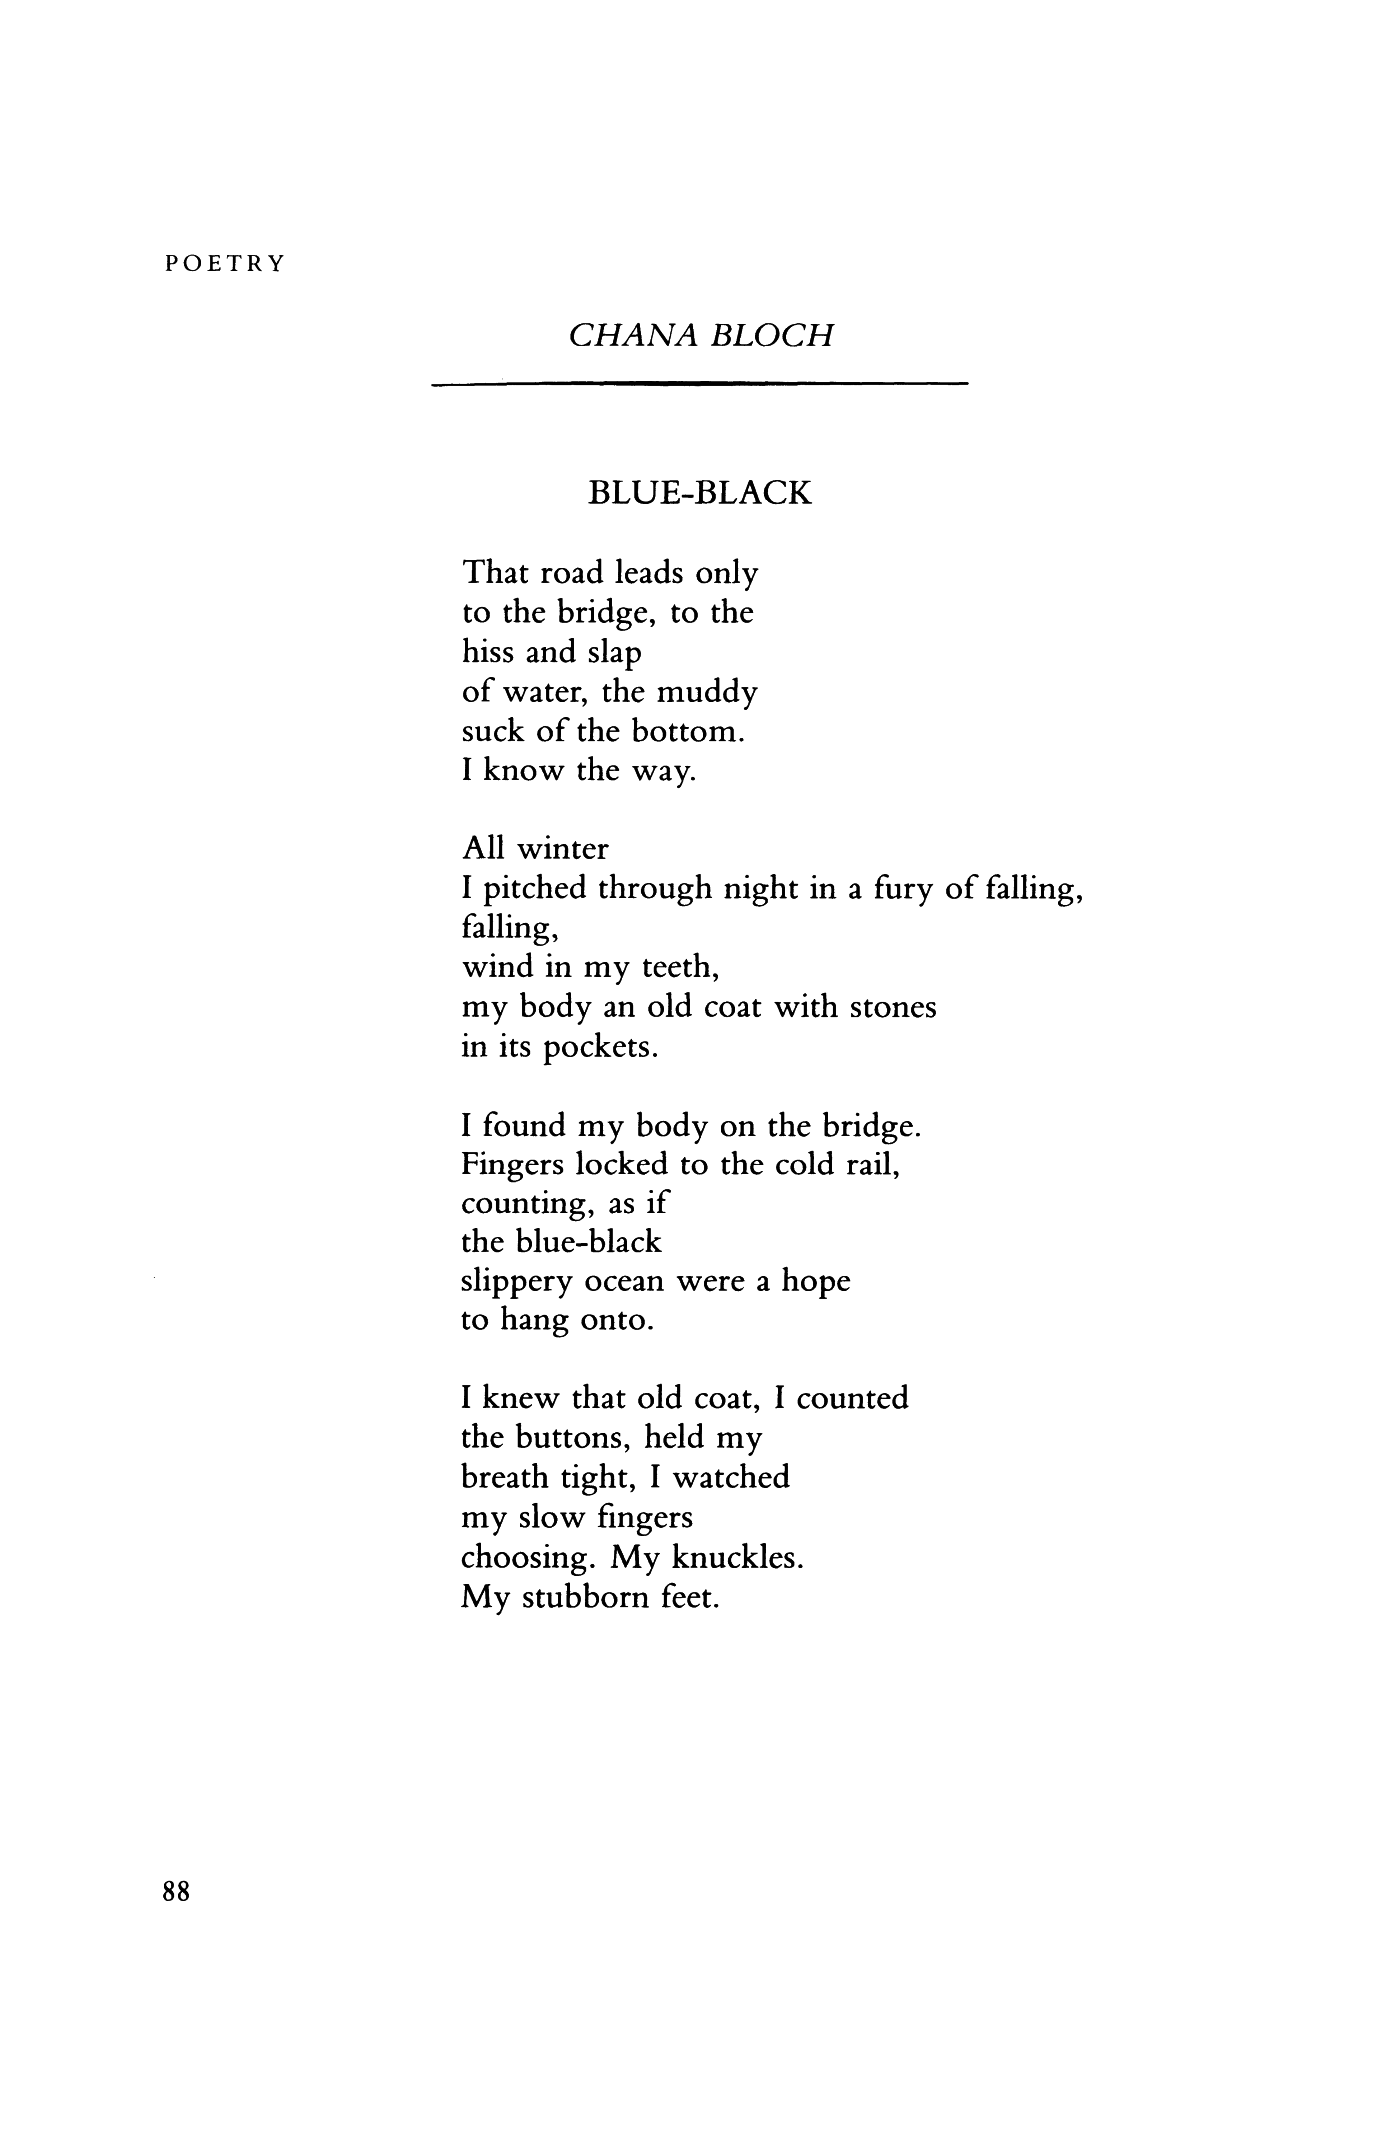 the choosing poem